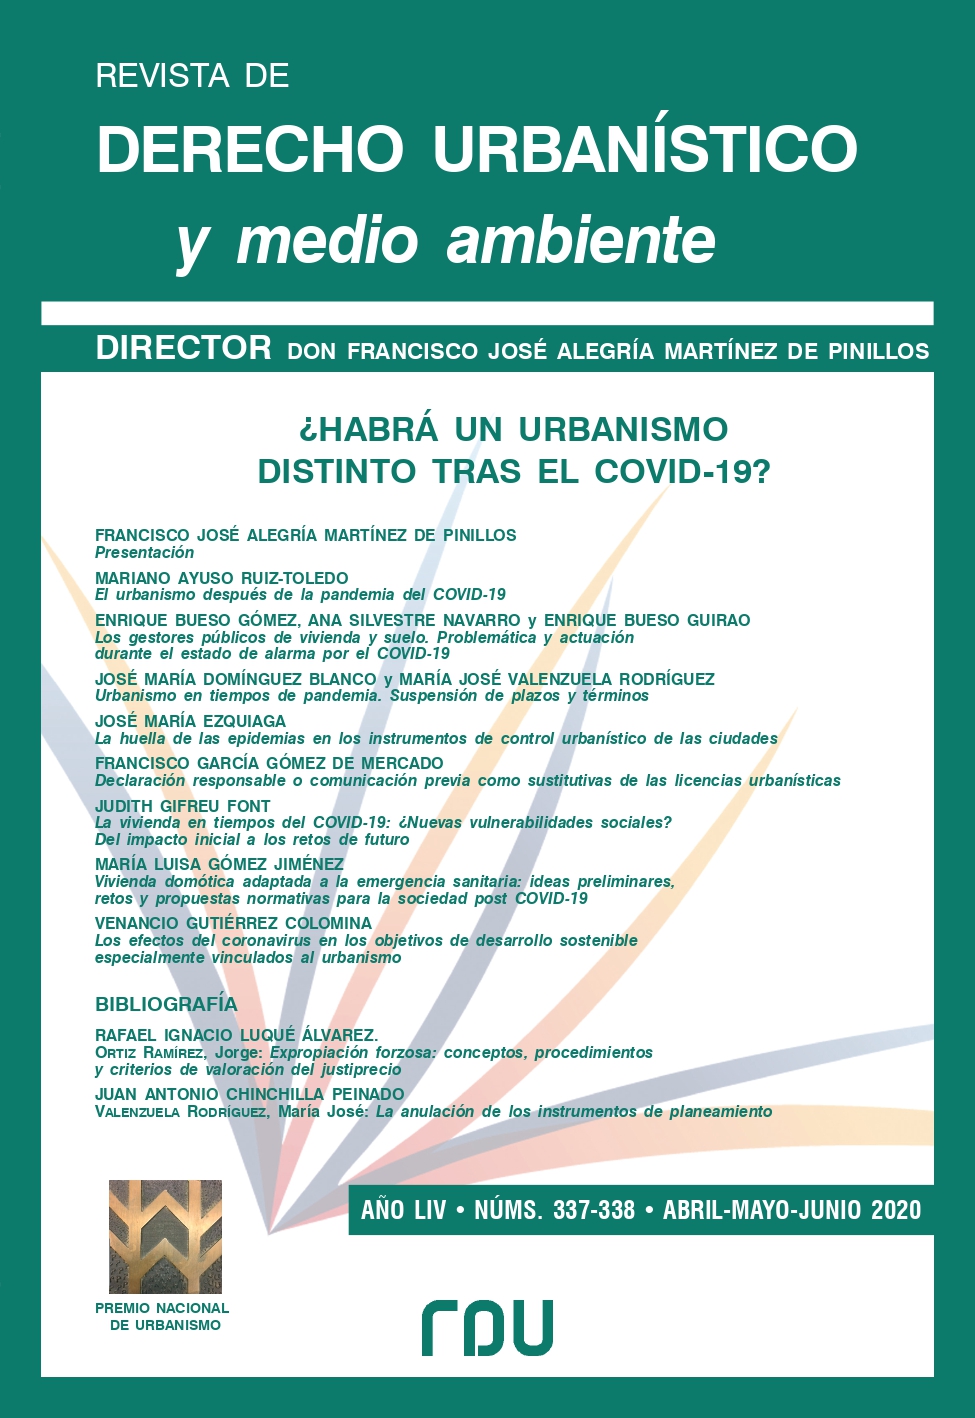 					View Vol. 54 No. 337-338 (2020): REVISTA DE DERECHO URBANISTICO Y MEDIO AMBIENTE
				